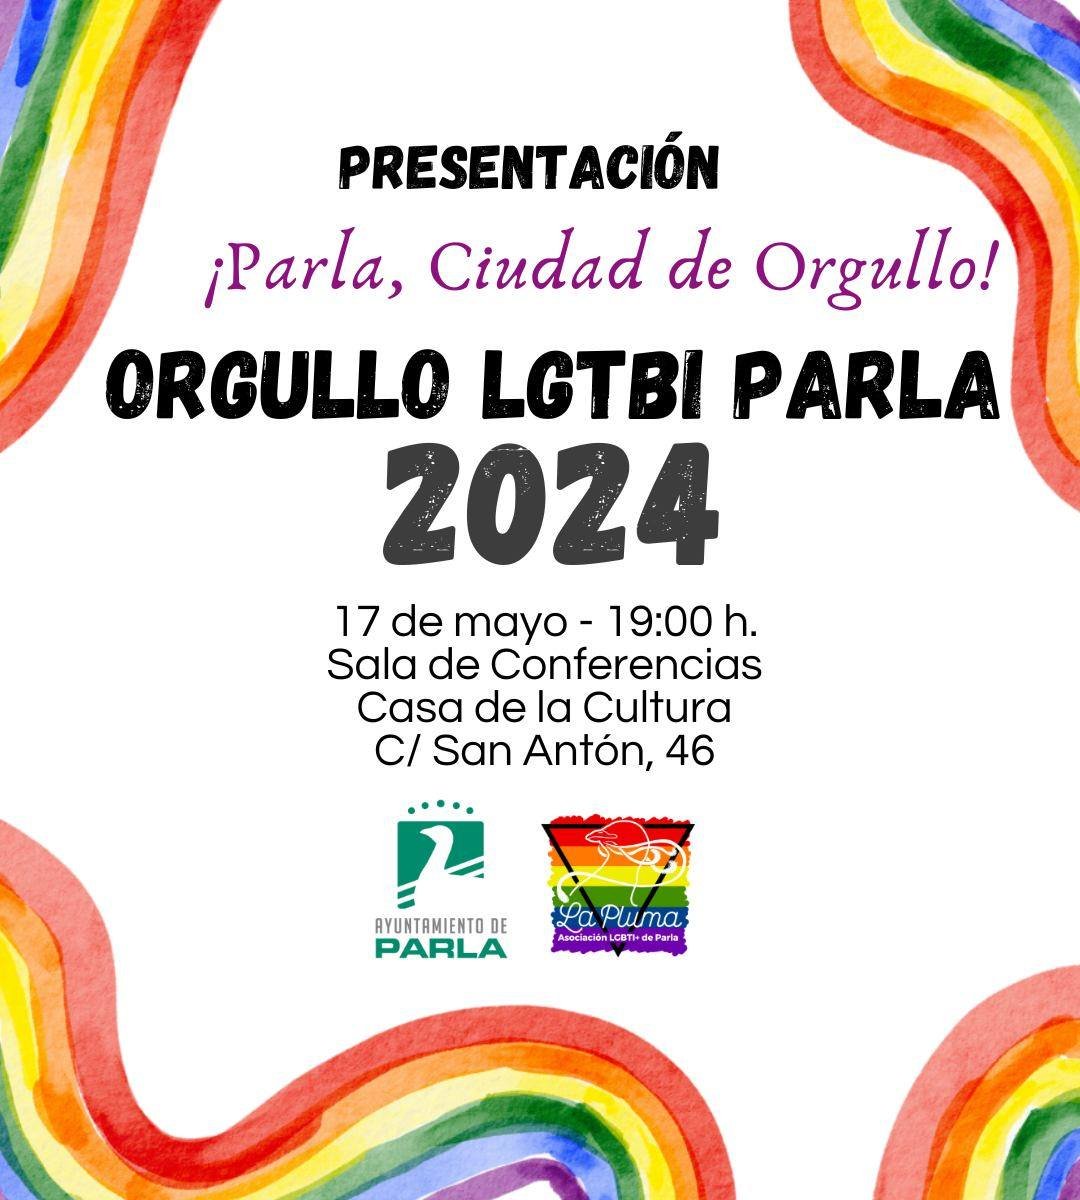 Hoy viernes, el Ayuntamiento de #Parla Concejalía Igualdad @CarlaEValero00 y @laplumaparla presentan #ParlaCiudadDeOrgullo🏳️‍🌈, programa en torno al Día Internacional del orgullo LGTBI que se celebrará del 31 de mayo al 29 de junio.